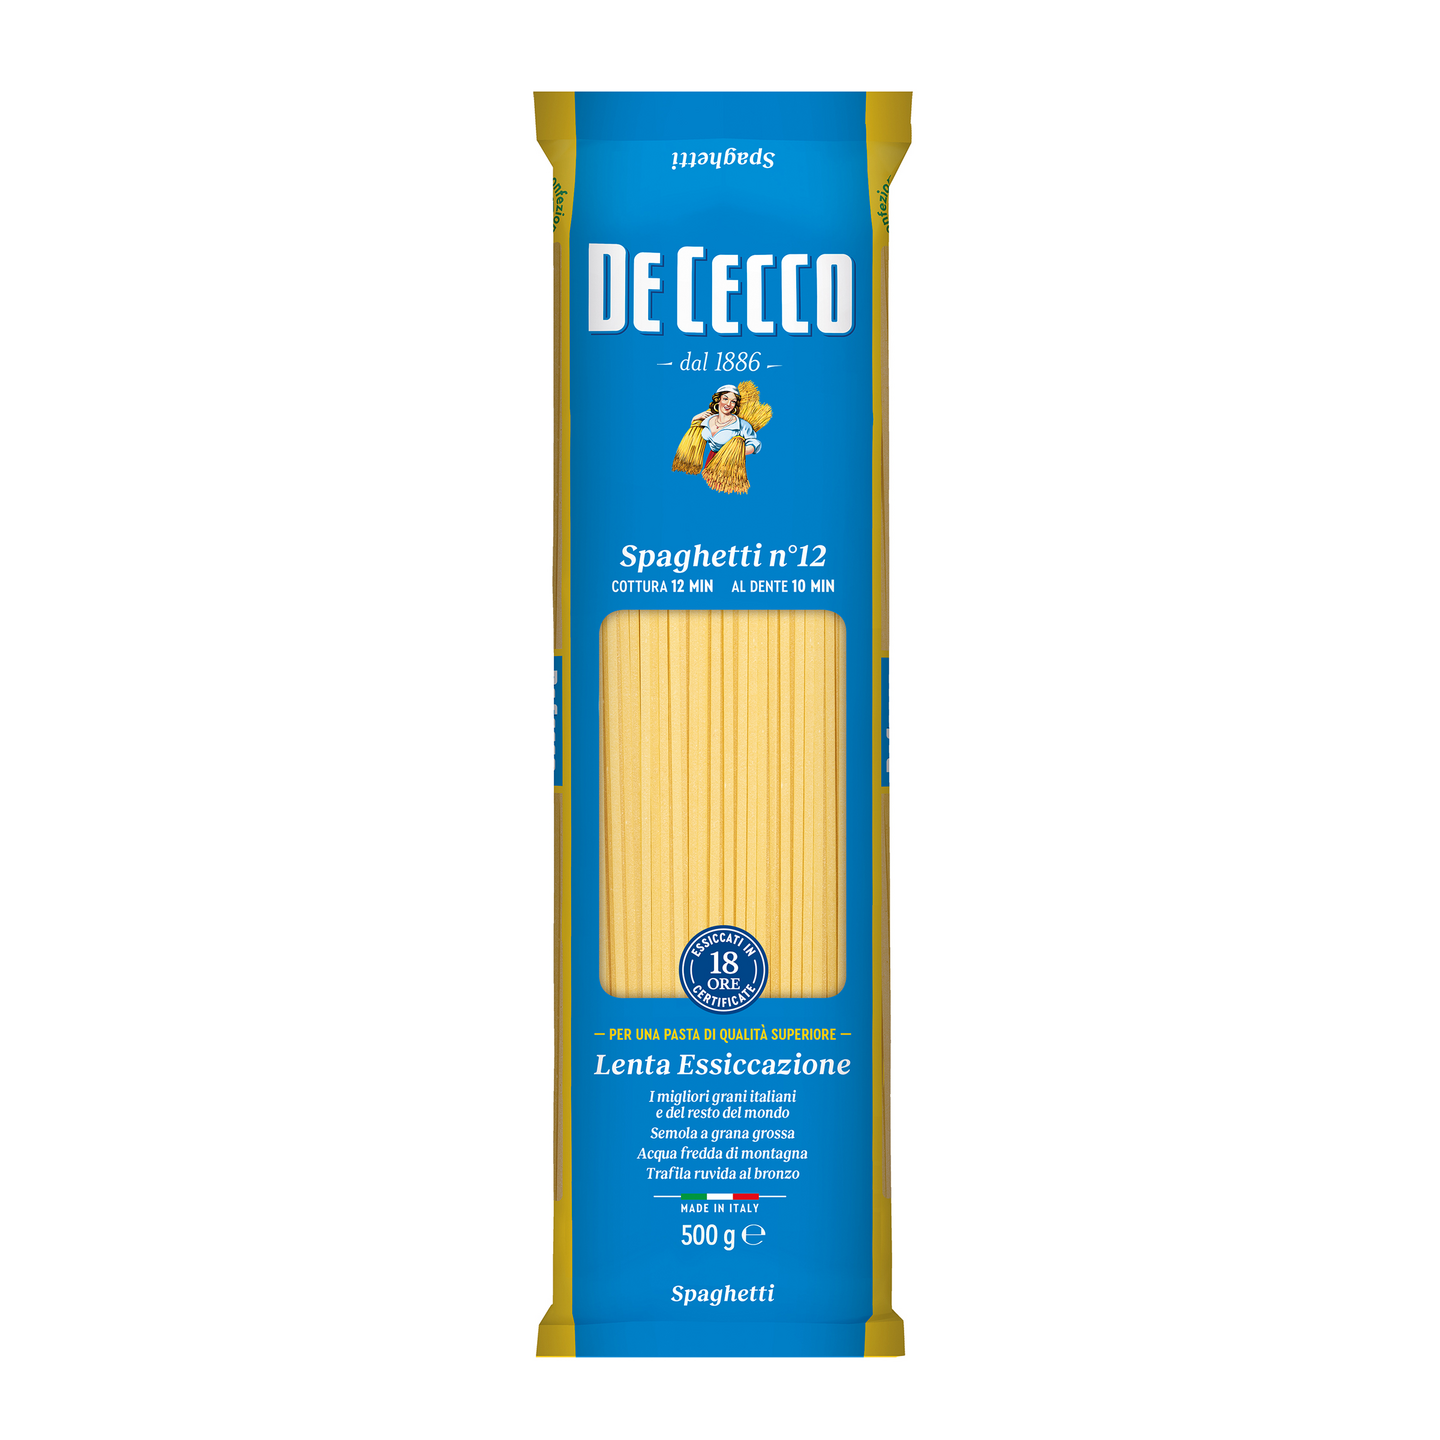 De Cecco Spaghetti n.12 500g